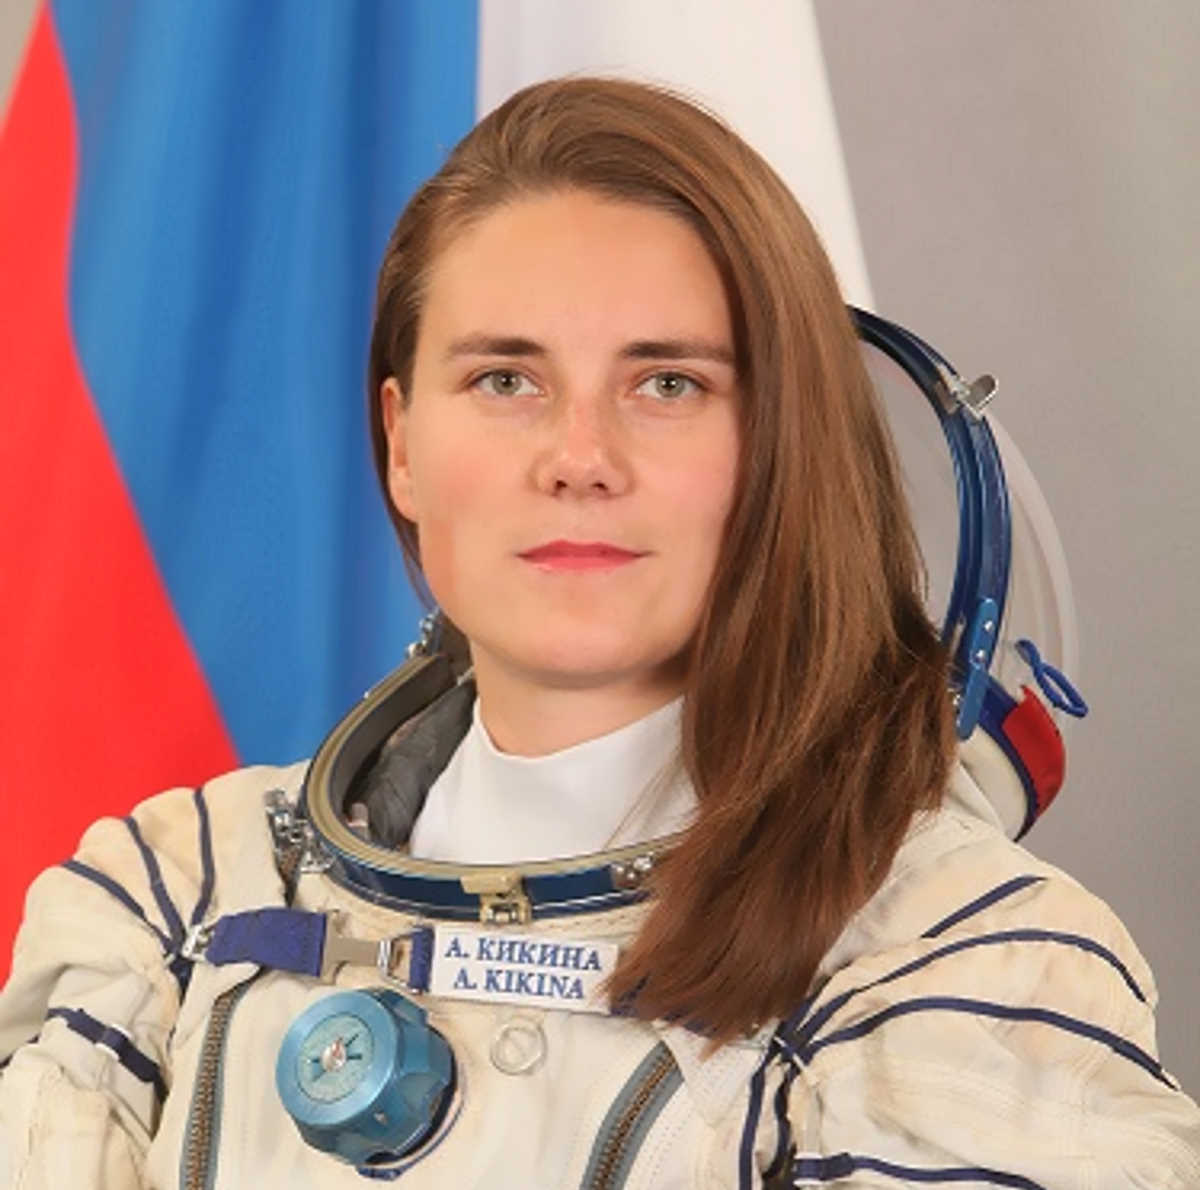 L'astronauta russa Kikina farà parte dell'equipaggio della prossima missione Crew Dragon